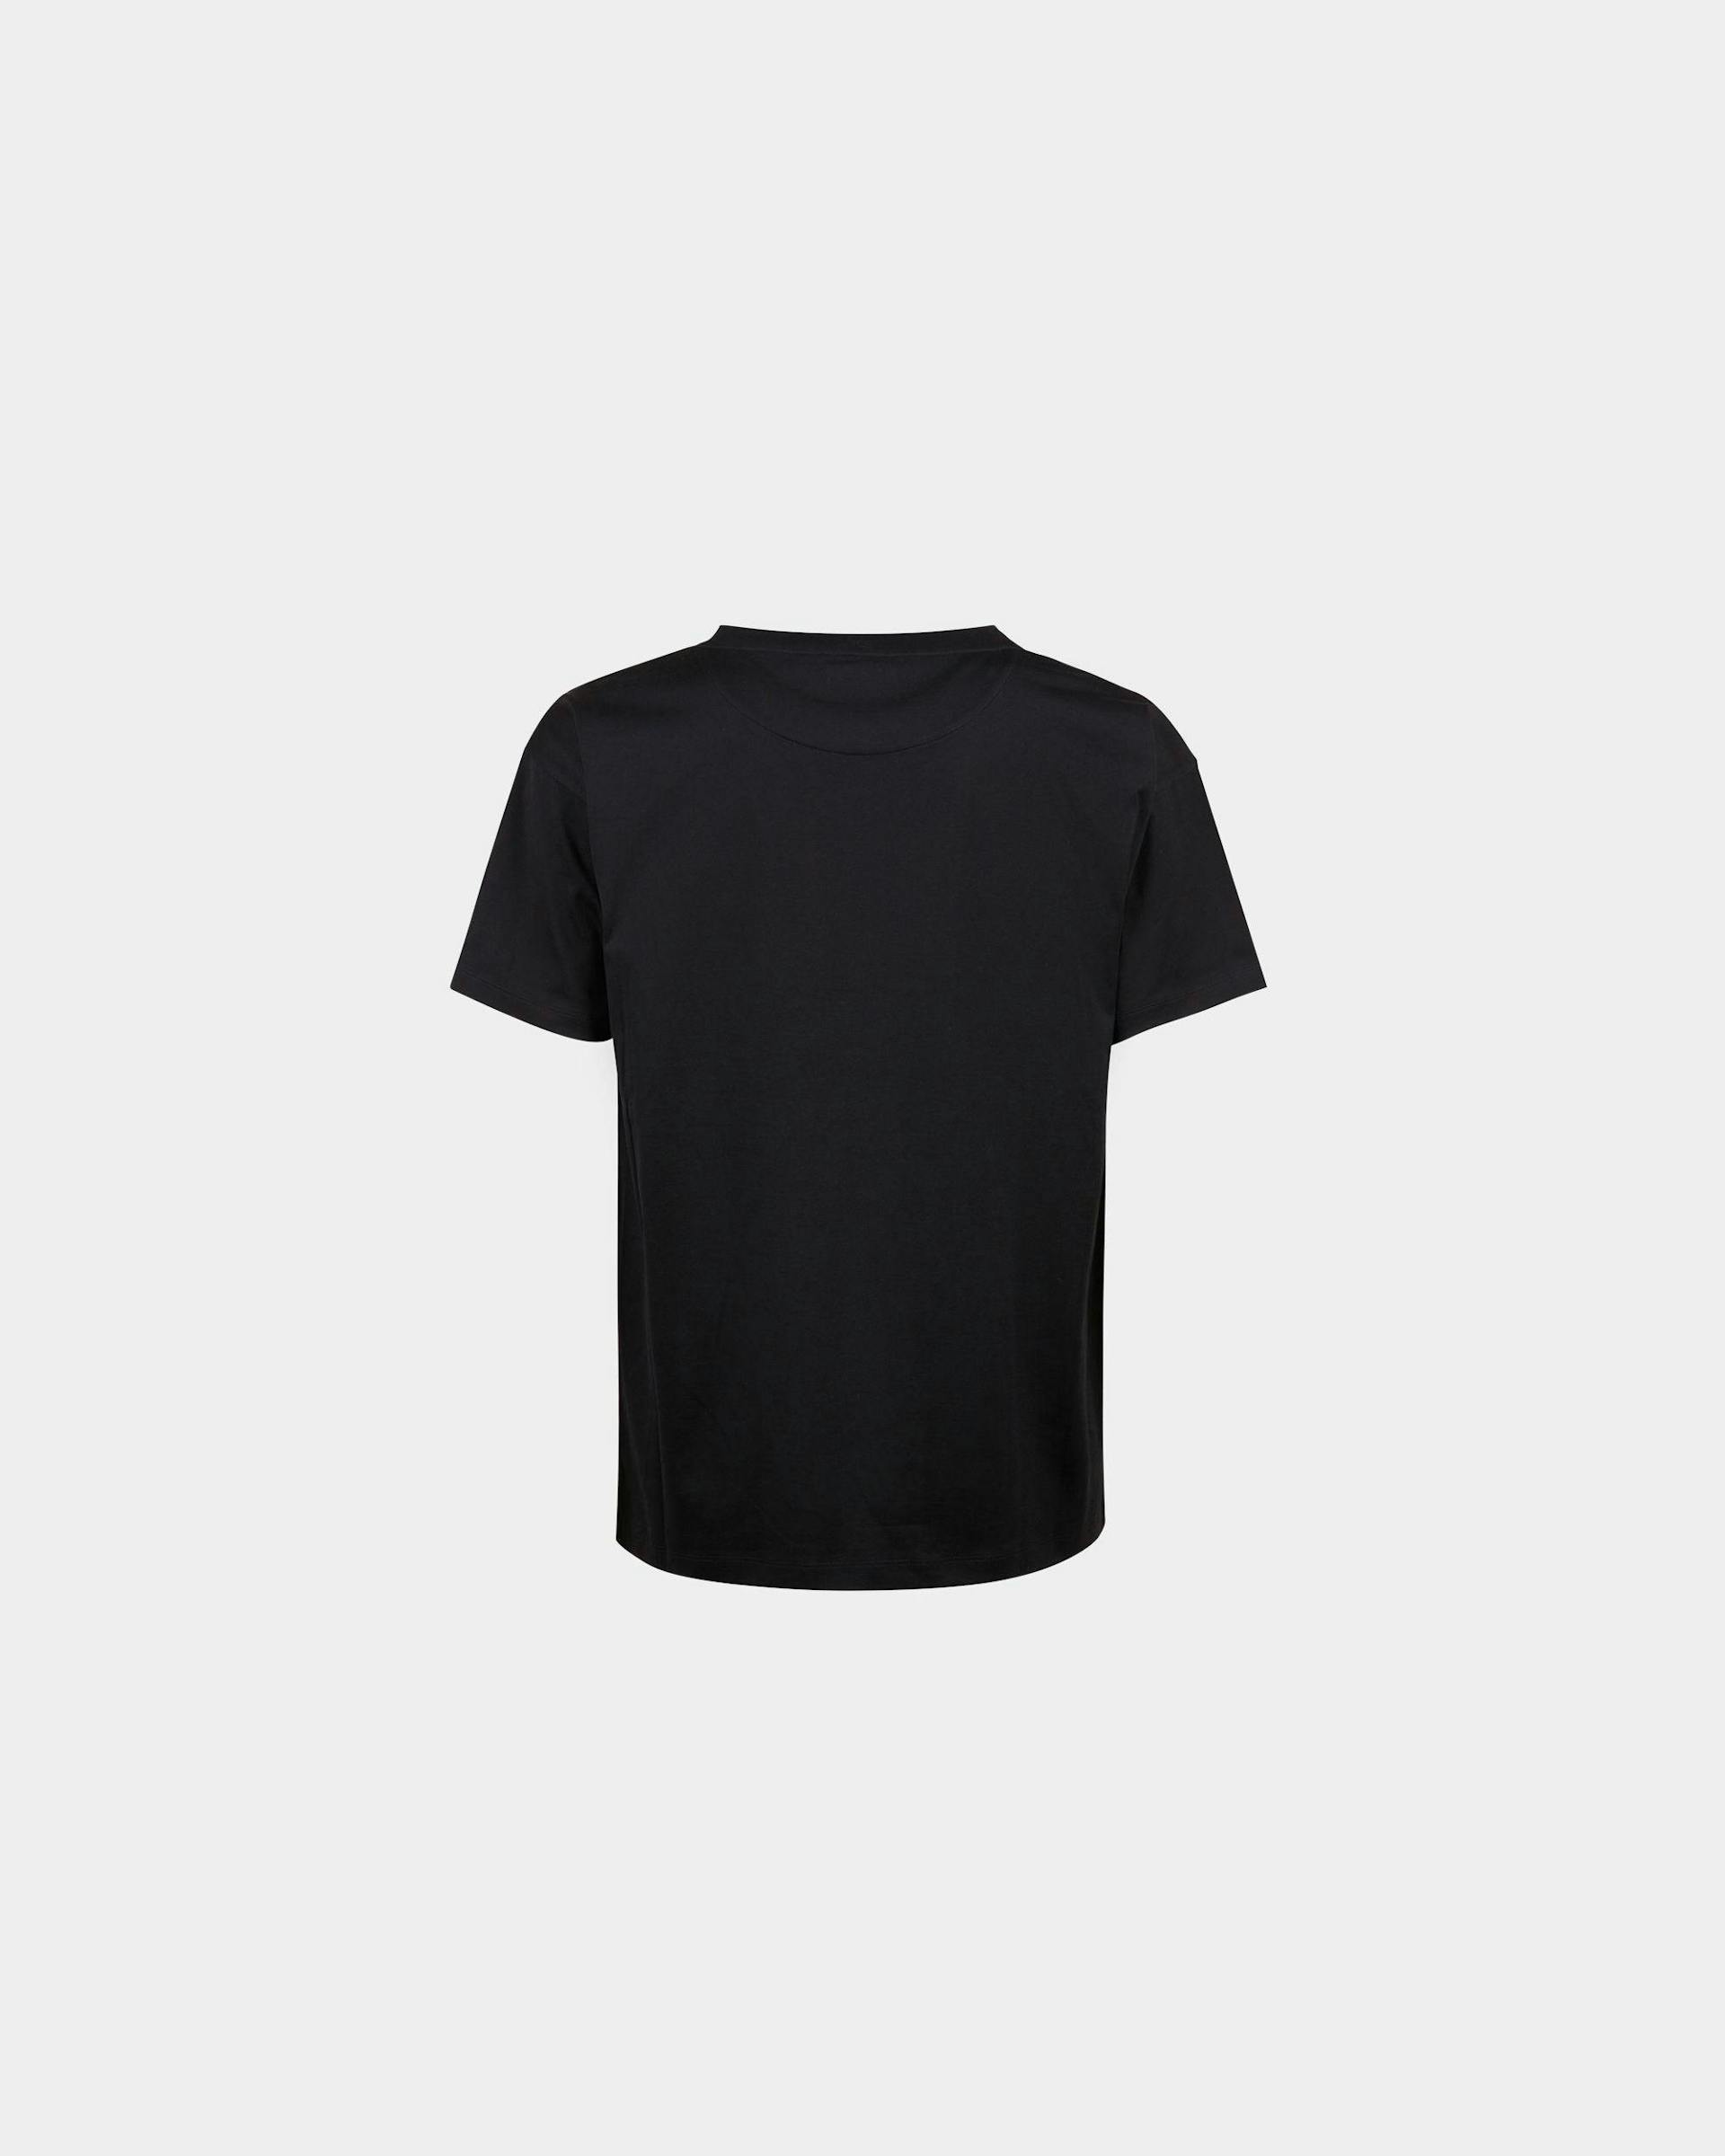 Men's T-Shirt In Black Cotton | Bally | Still Life Back